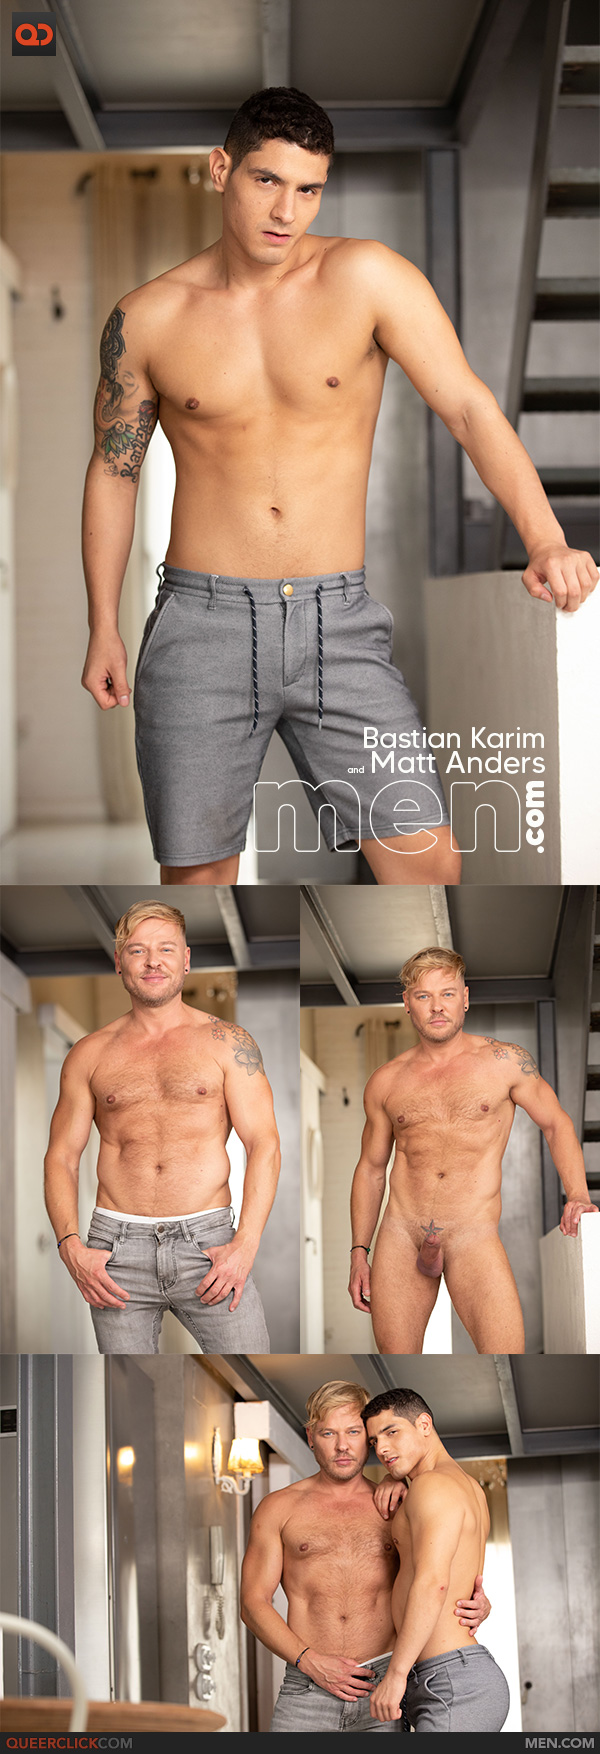 Men.com: Bastian Karim and Matt Anders